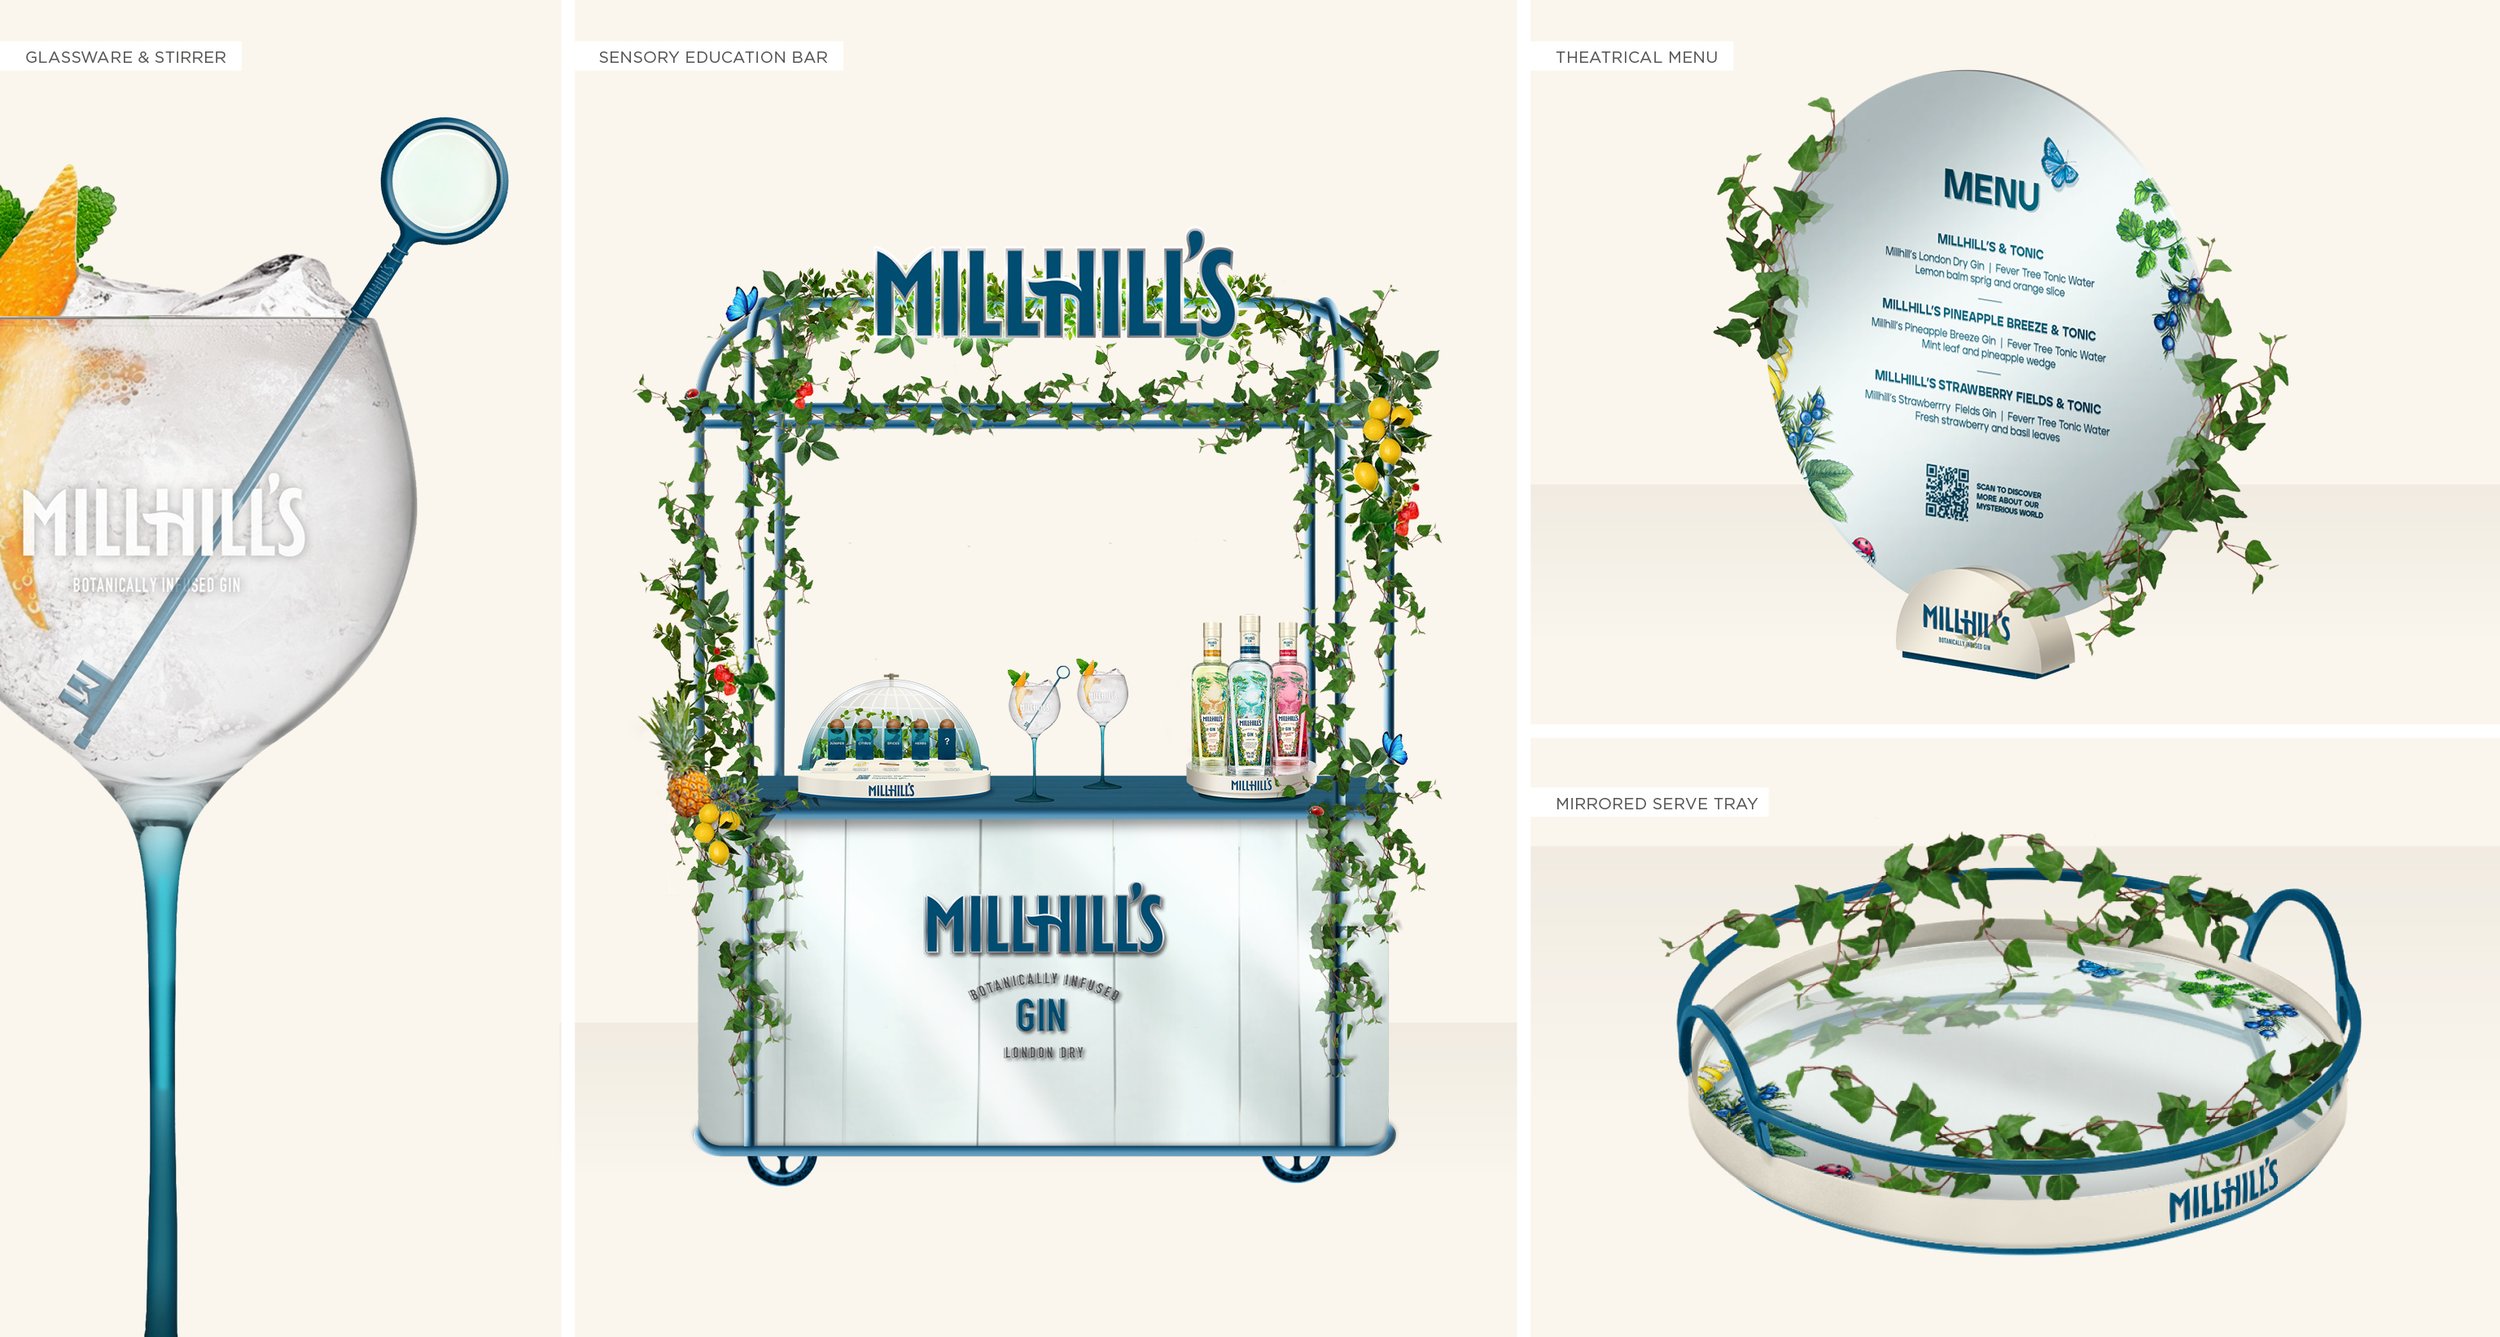 Millhill's Gin_Website_OnTradeAssets.jpg